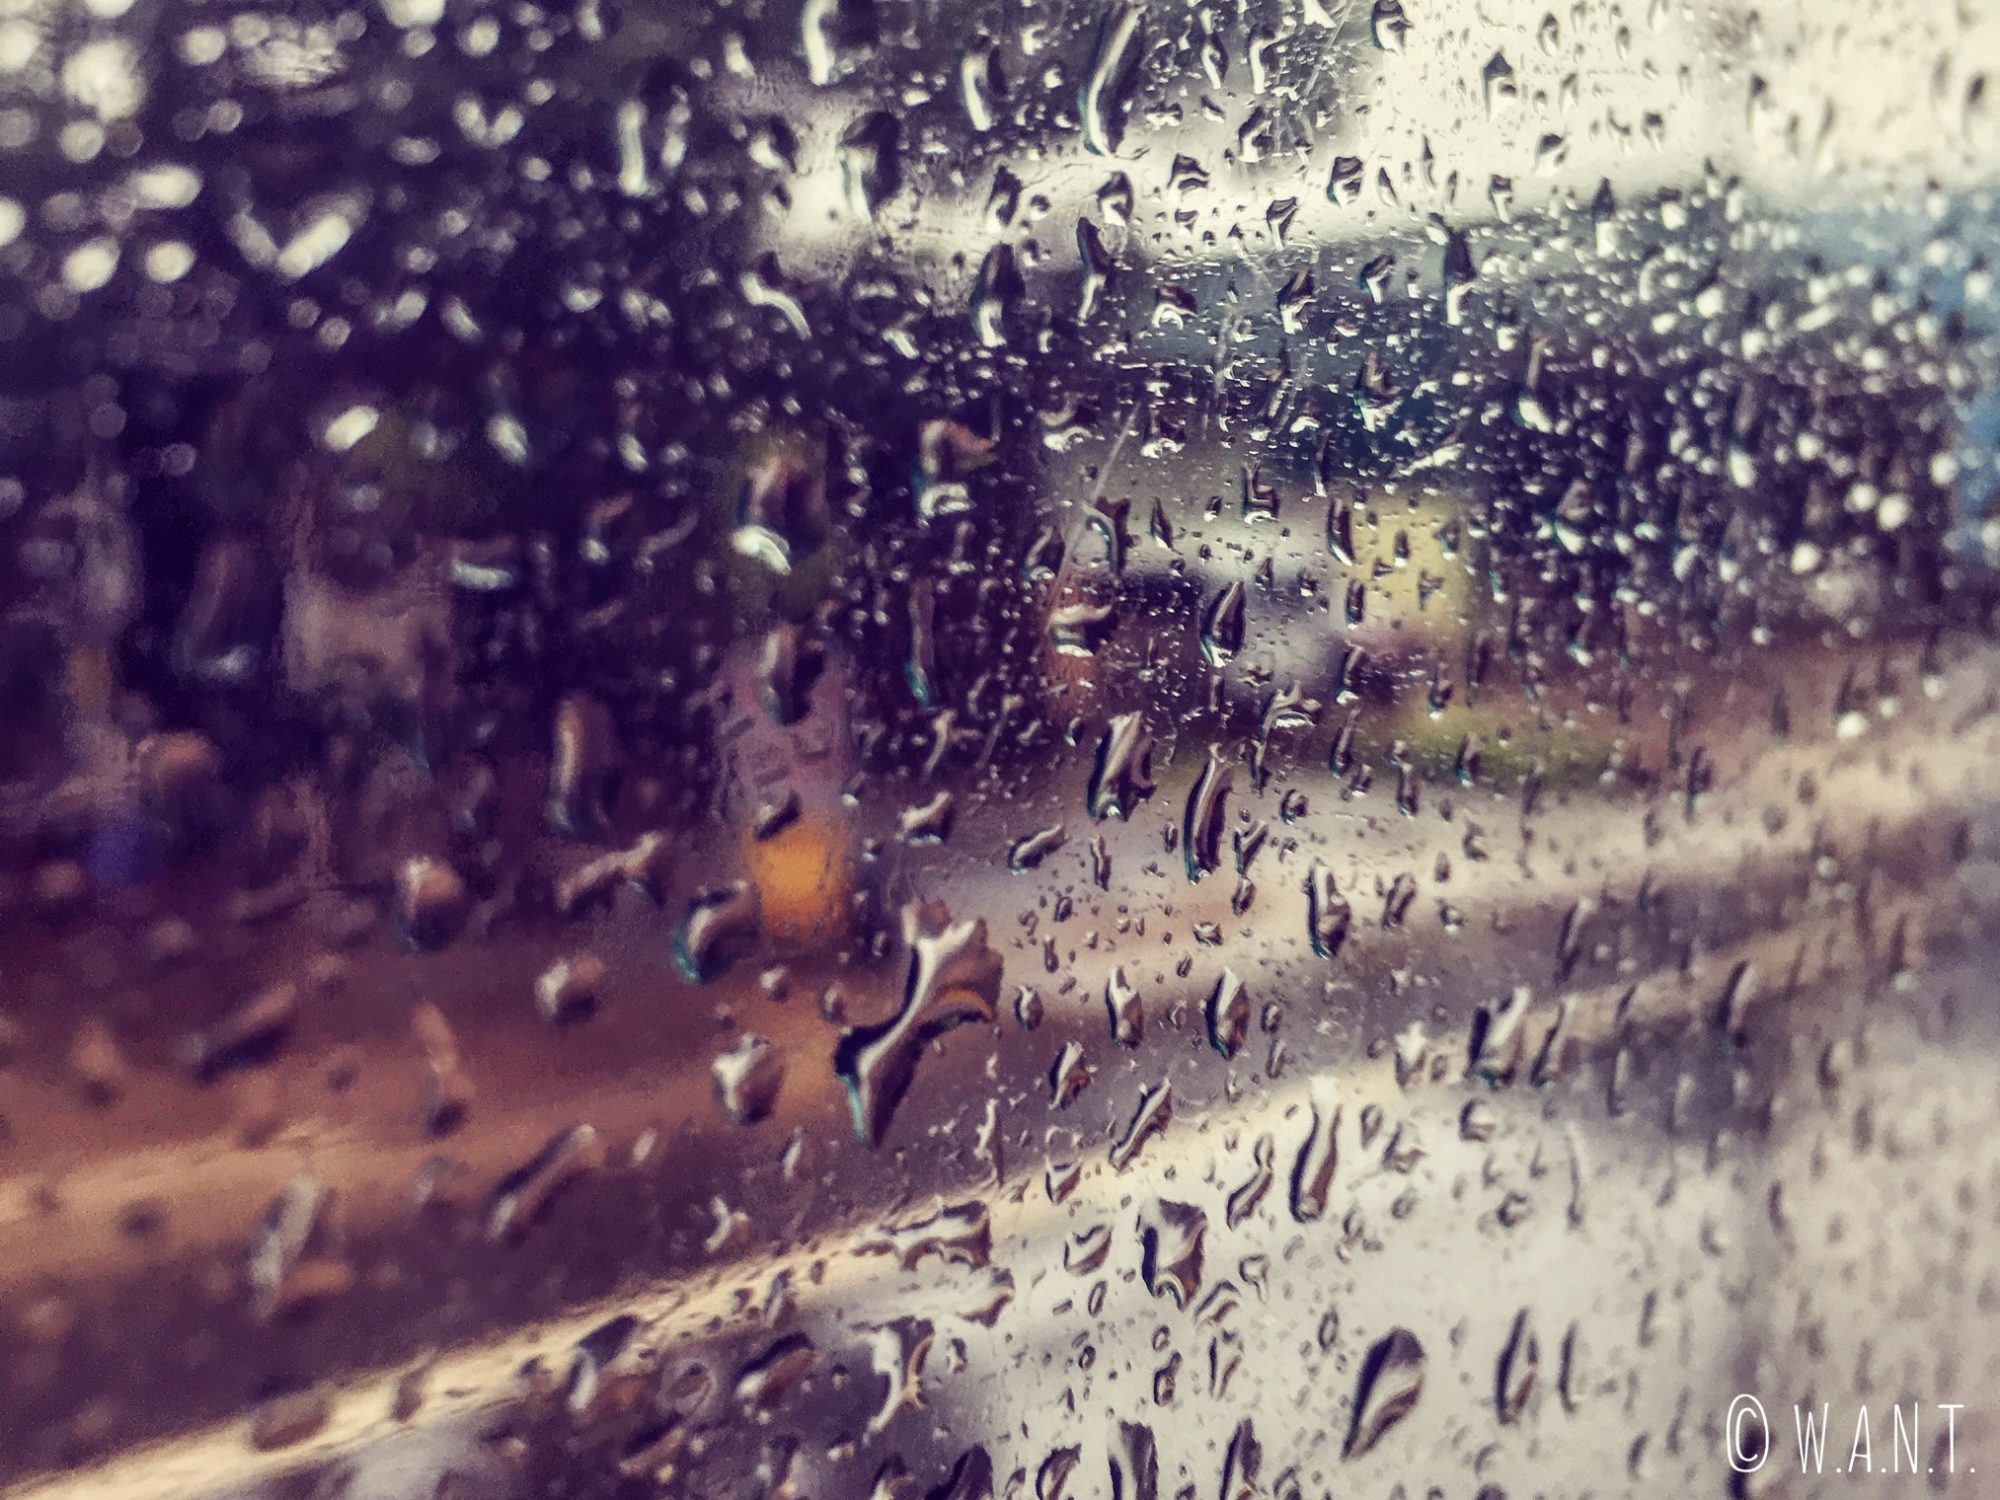 En arrivant à Da Lat, nous apercevons le déluge à travers la fenêtre du minibus